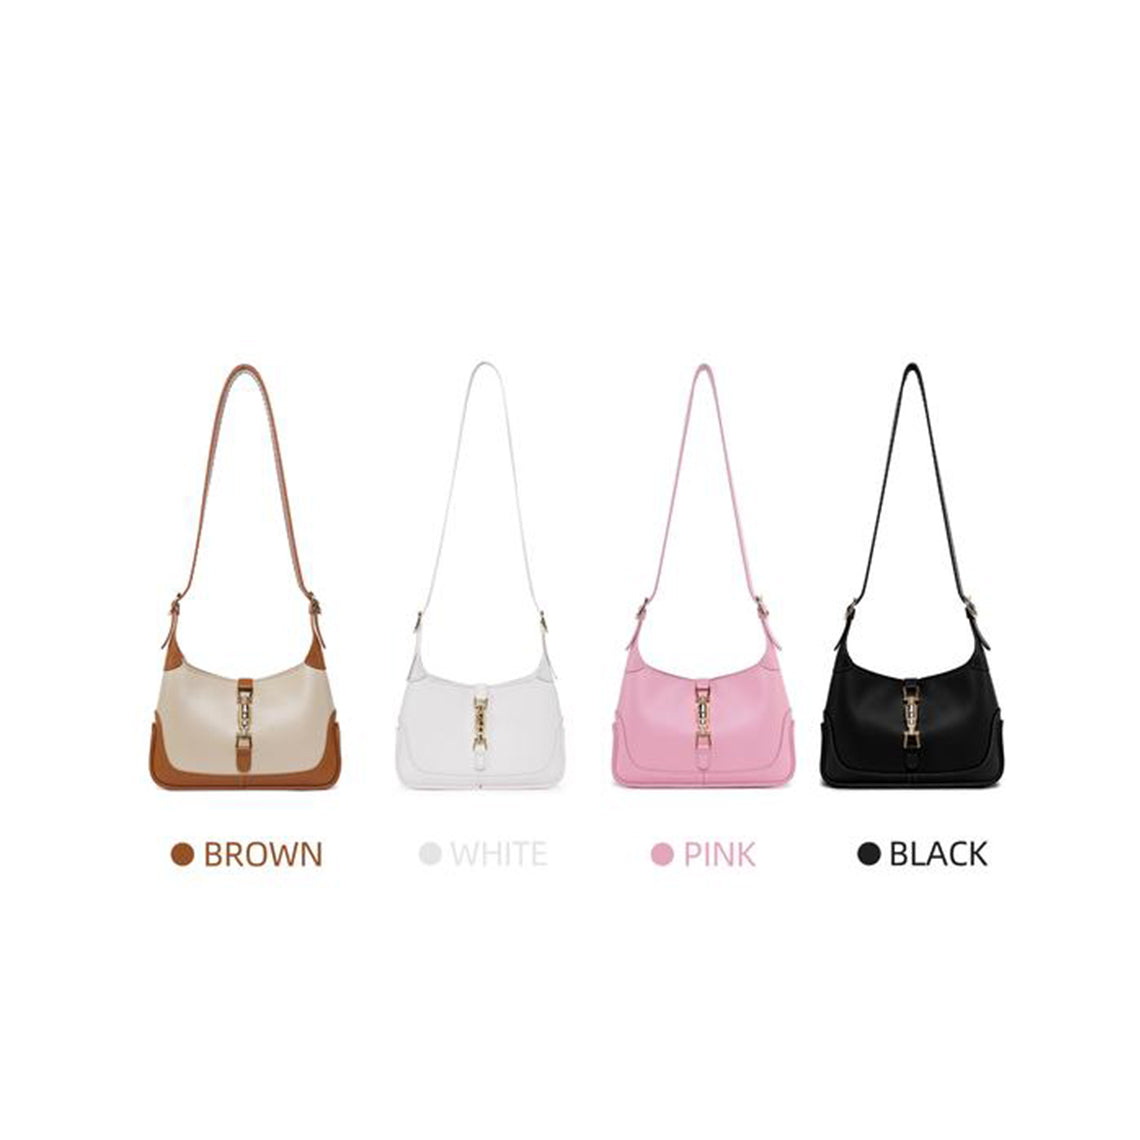 Leather Jackie Shoulder Bag DIY Kit | 20% Price Drop at Checkout